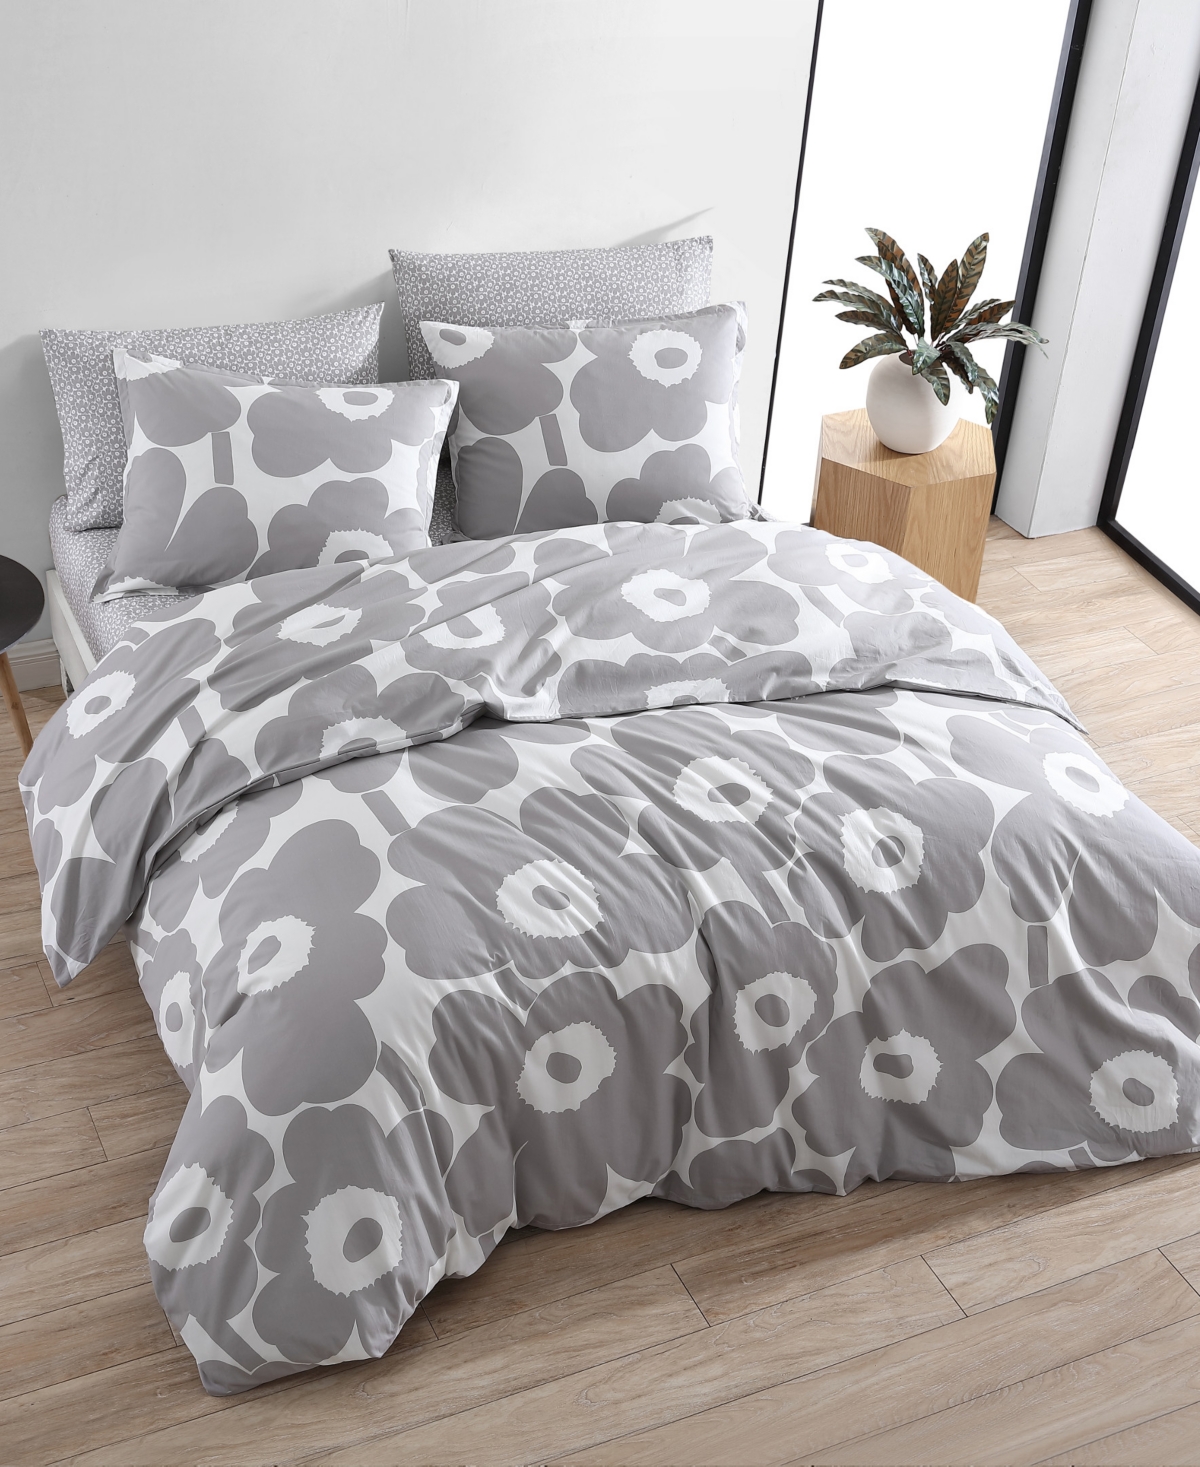 Marimekko Unikko Cotton Reversible 3 Piece Comforter Set, Full/queen In Gray